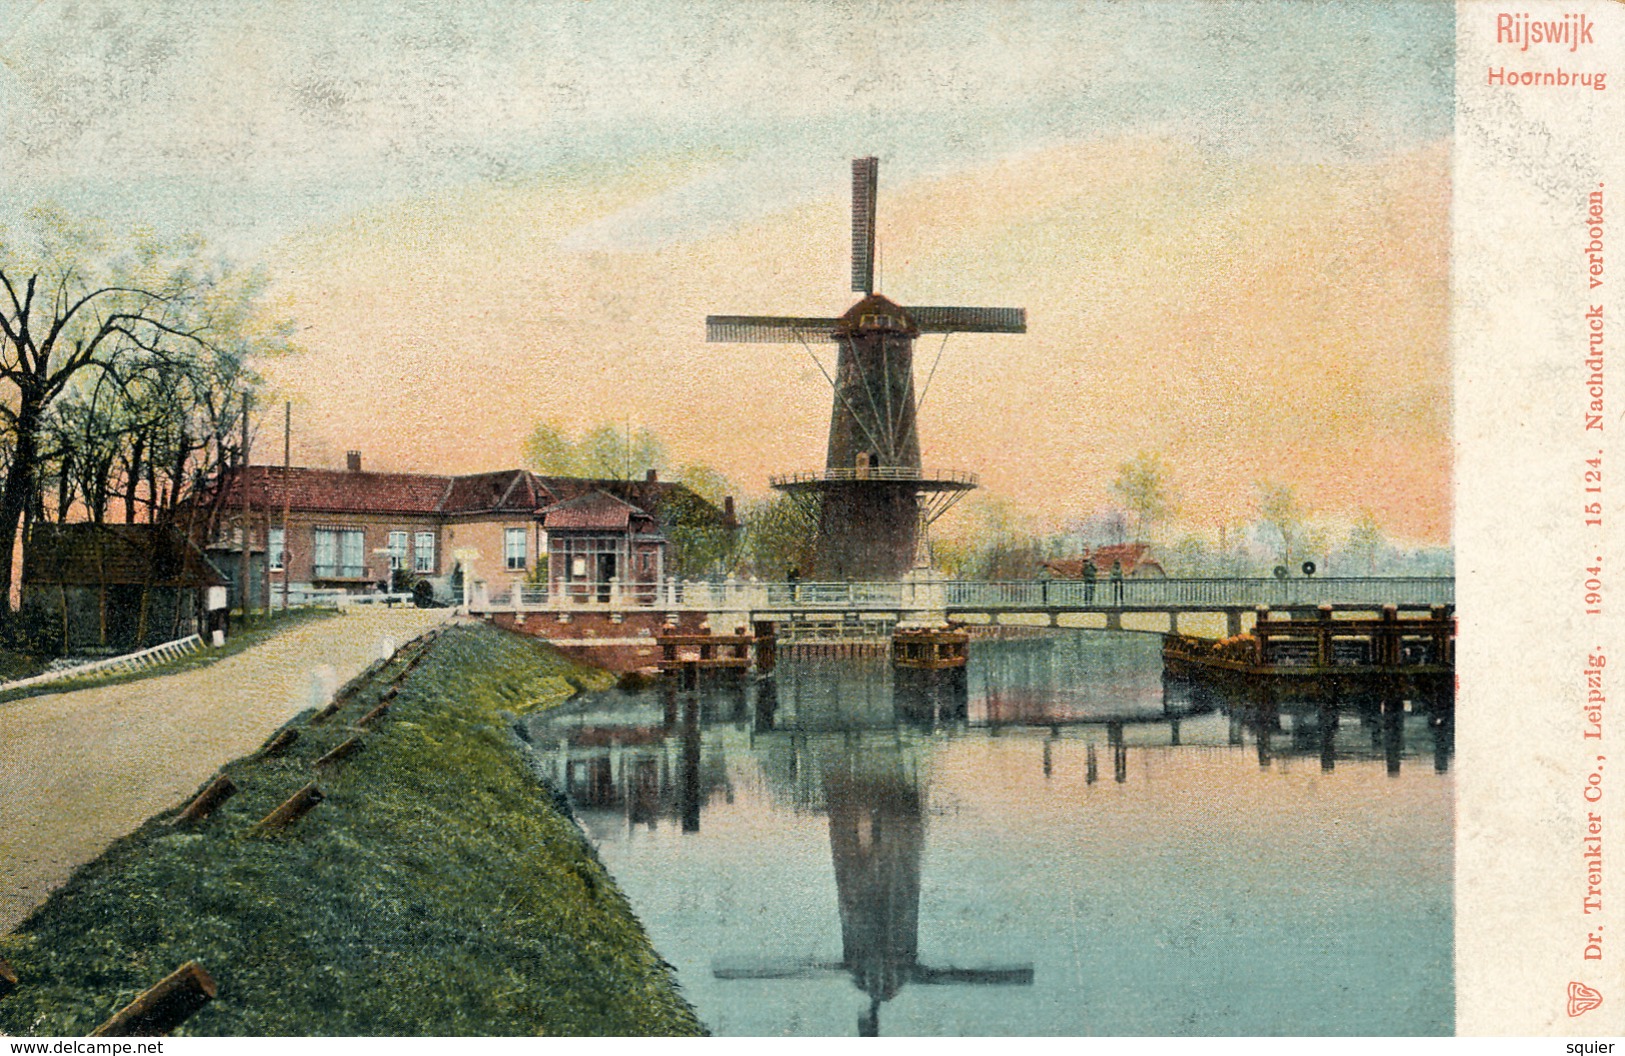 Rijswijk, Hoornbrug, Korenmolen, Windmill, Shadow - Watermolens